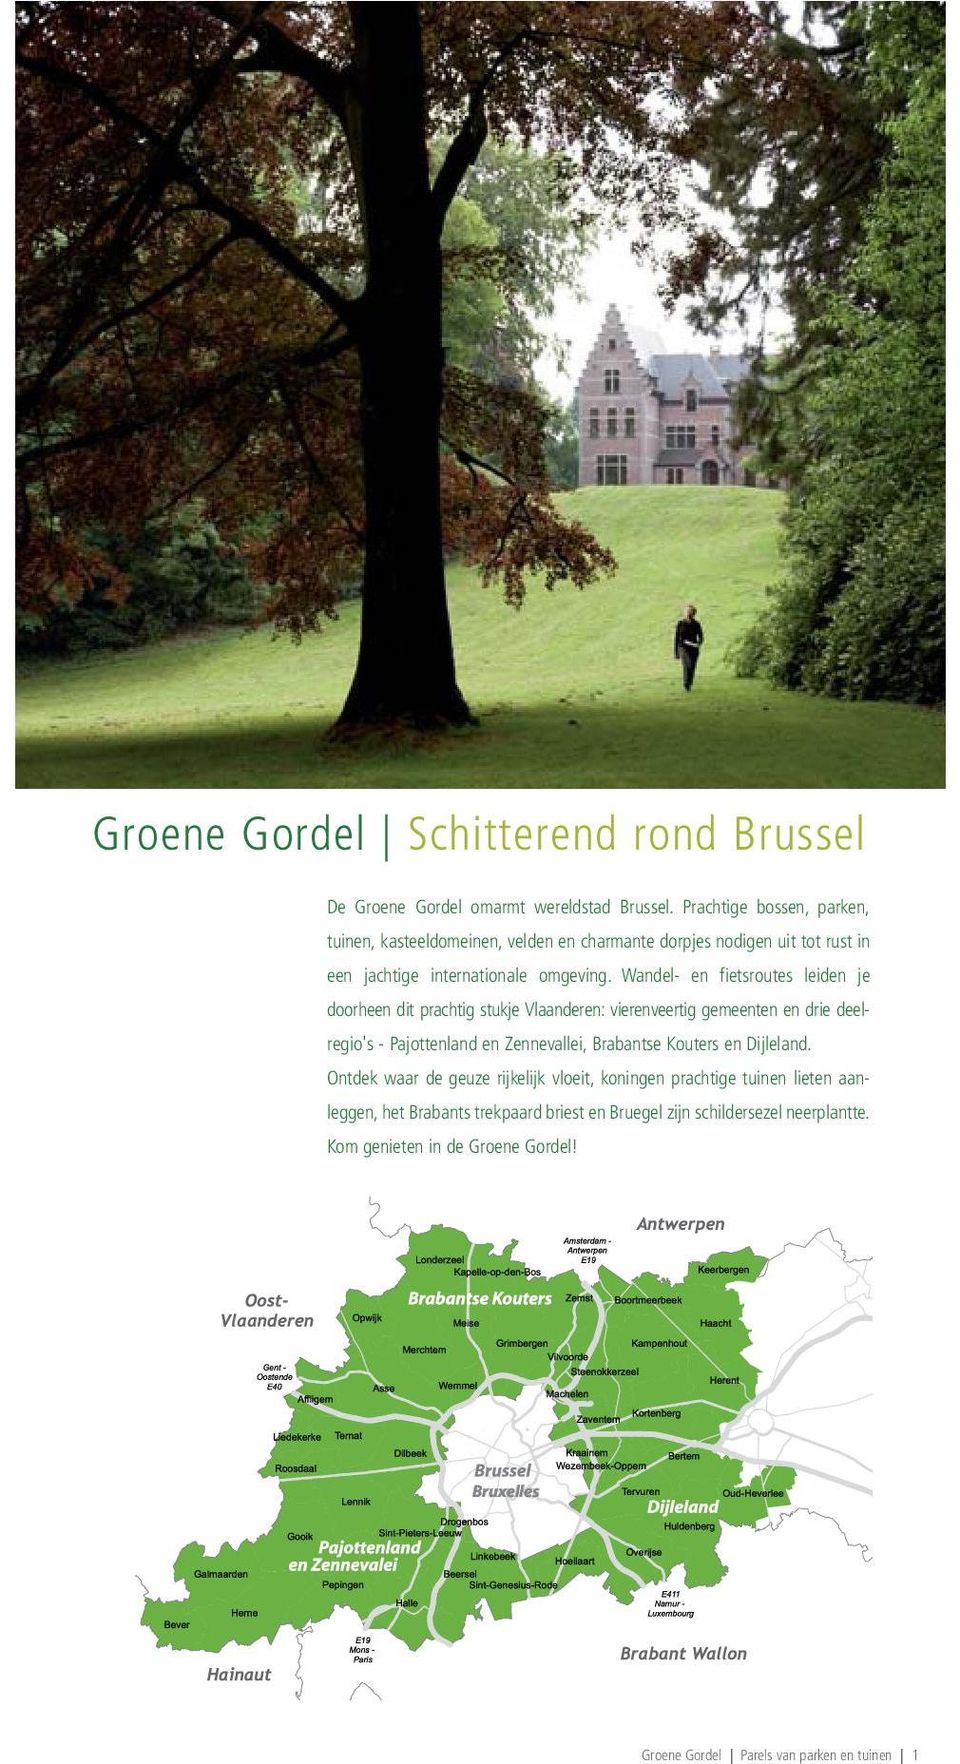 Wandel- en fietsroutes leiden je doorheen dit prachtig stukje Vlaanderen: vierenveertig gemeenten en drie deelregio's - Pajottenland en Zennevallei, Brabantse